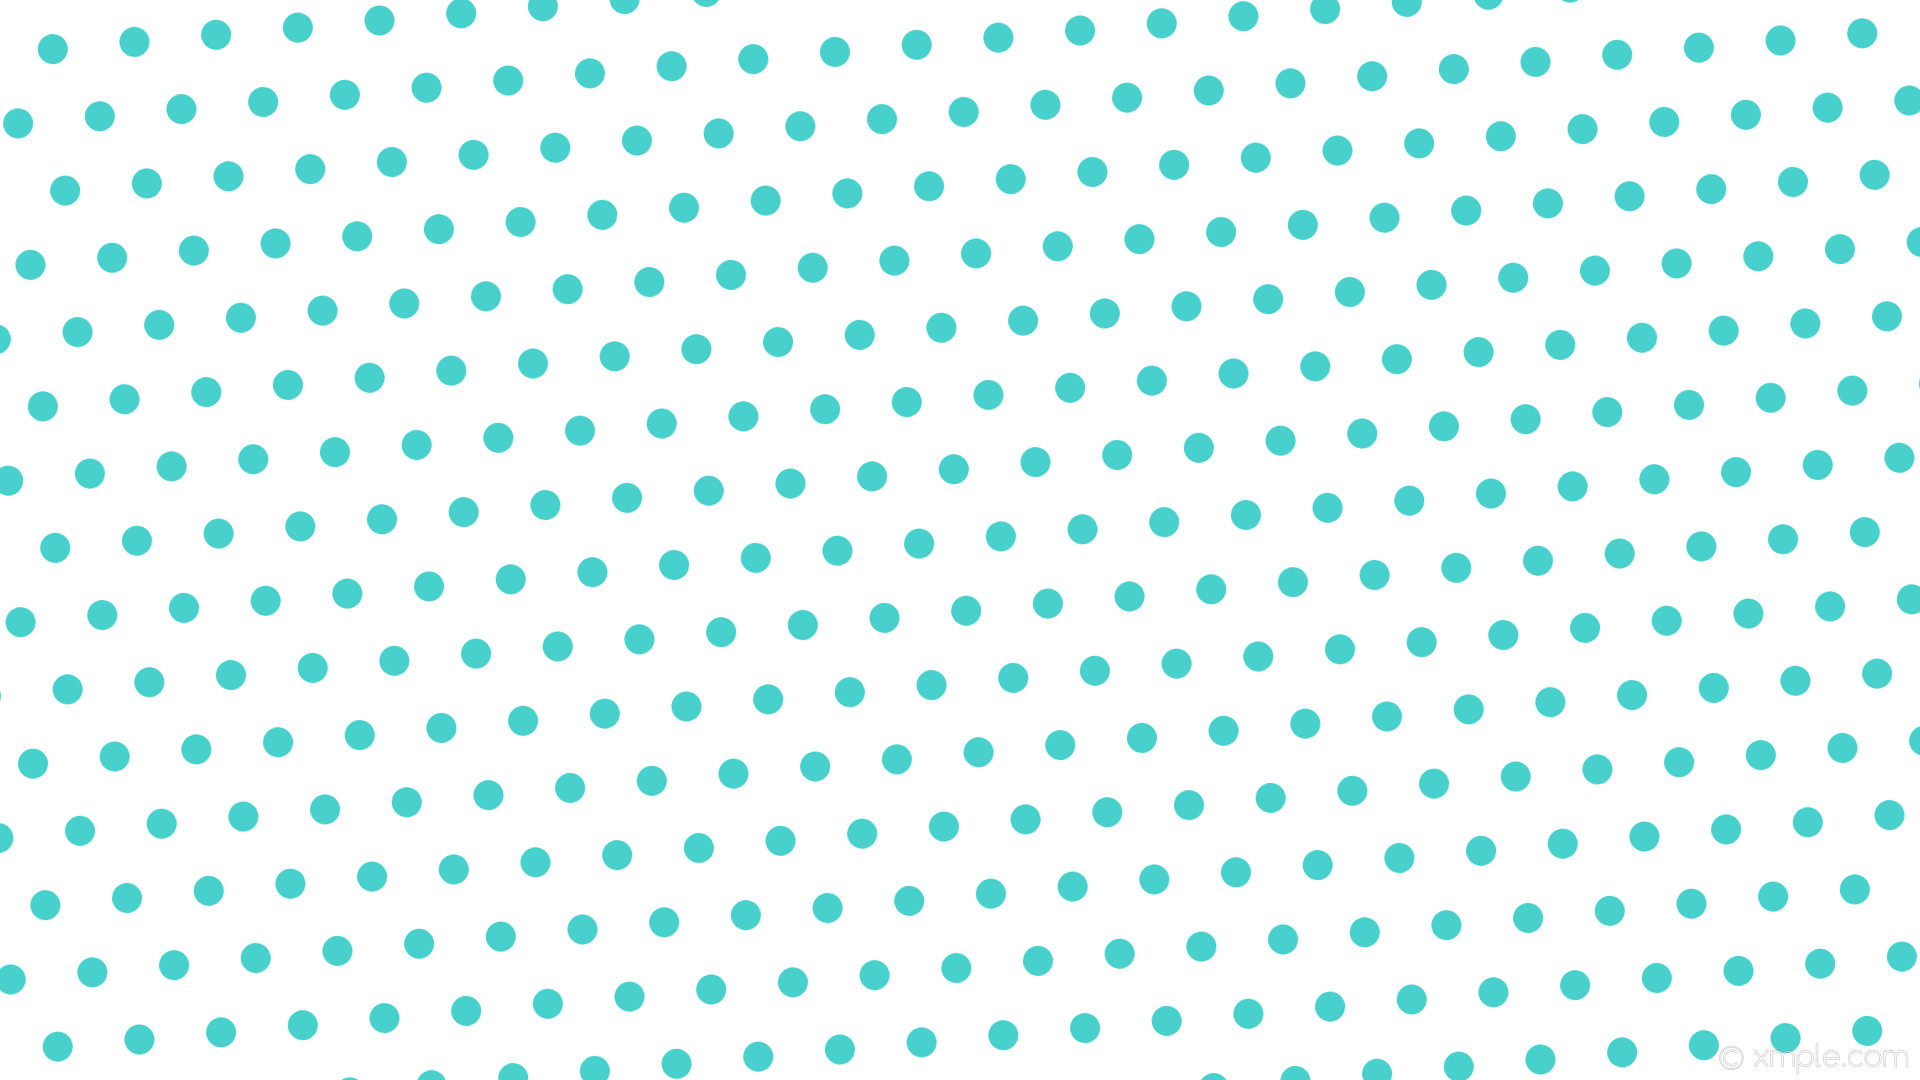 1920x1080 wallpaper white polka dots hexagon blue medium turquoise #ffffff #48d1cc  diagonal 5Â° 30px